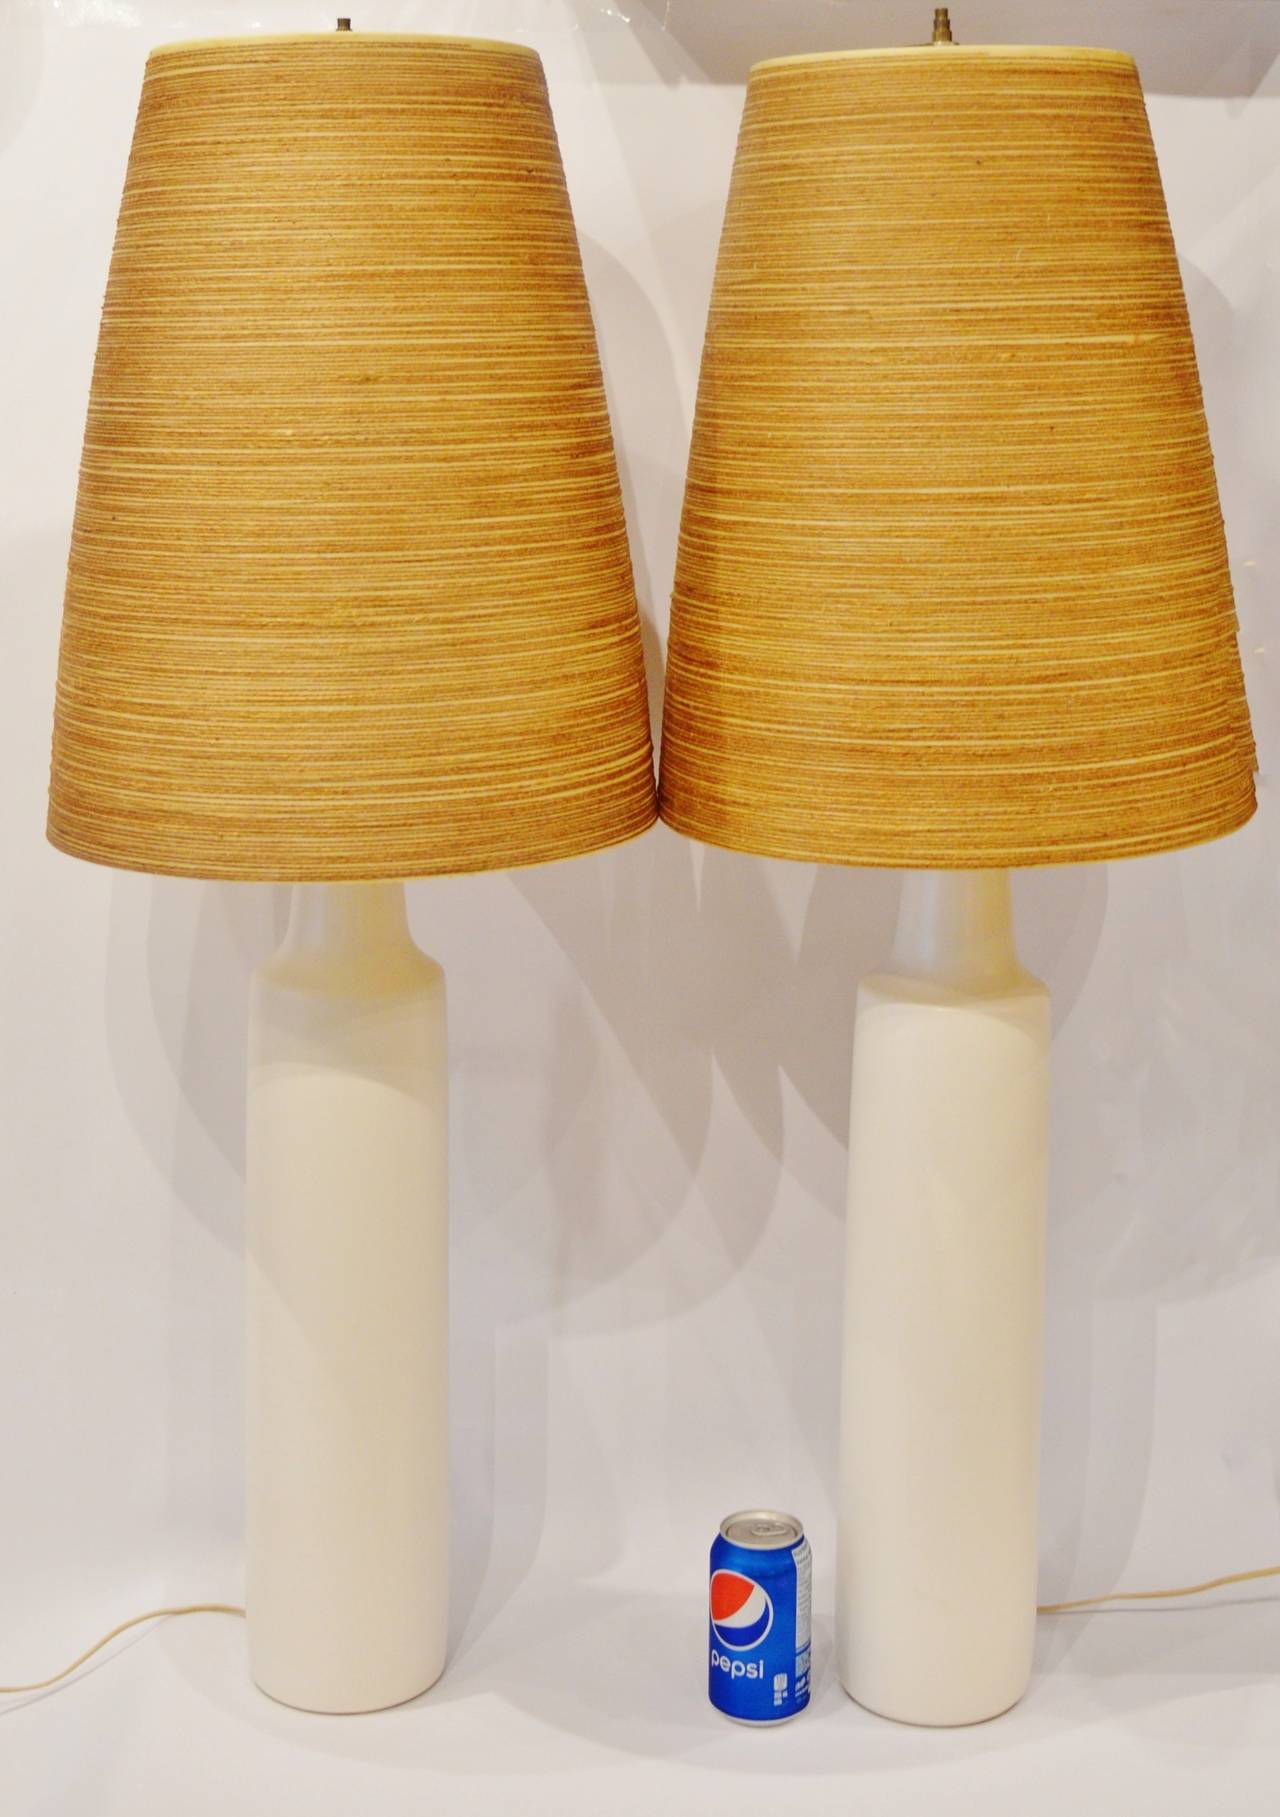 Canadian Monumental Pair of Lotte Bostlund Cream Ceramic Lamps